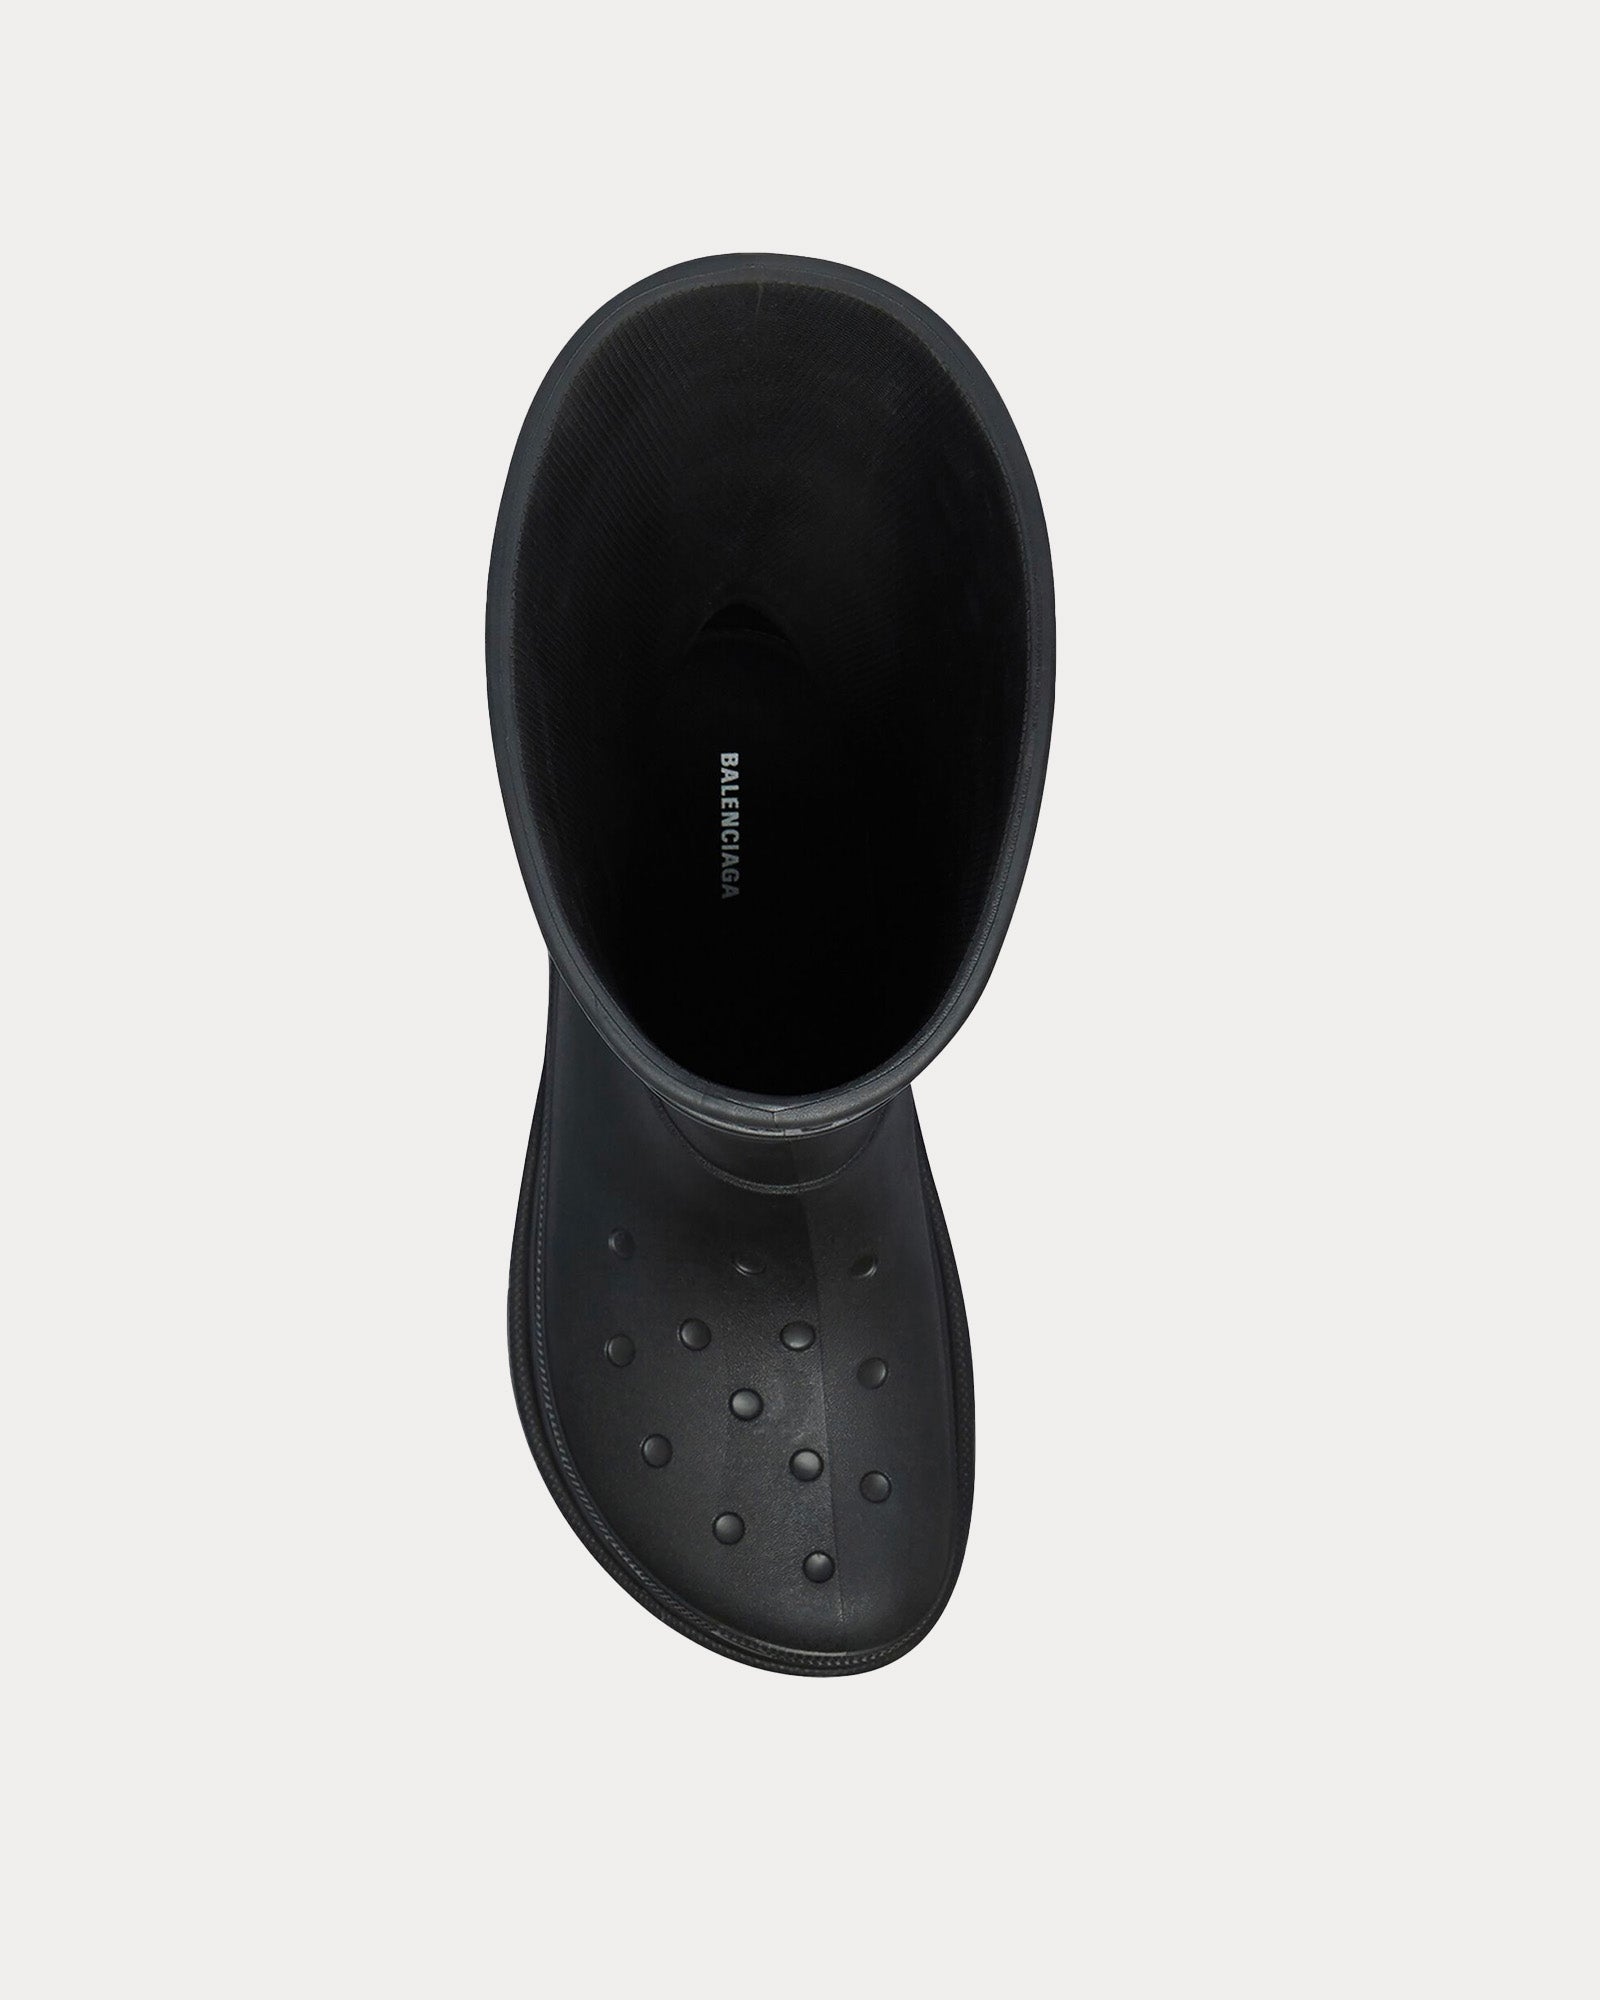 Balenciaga x Crocs - Rubber Black Boots